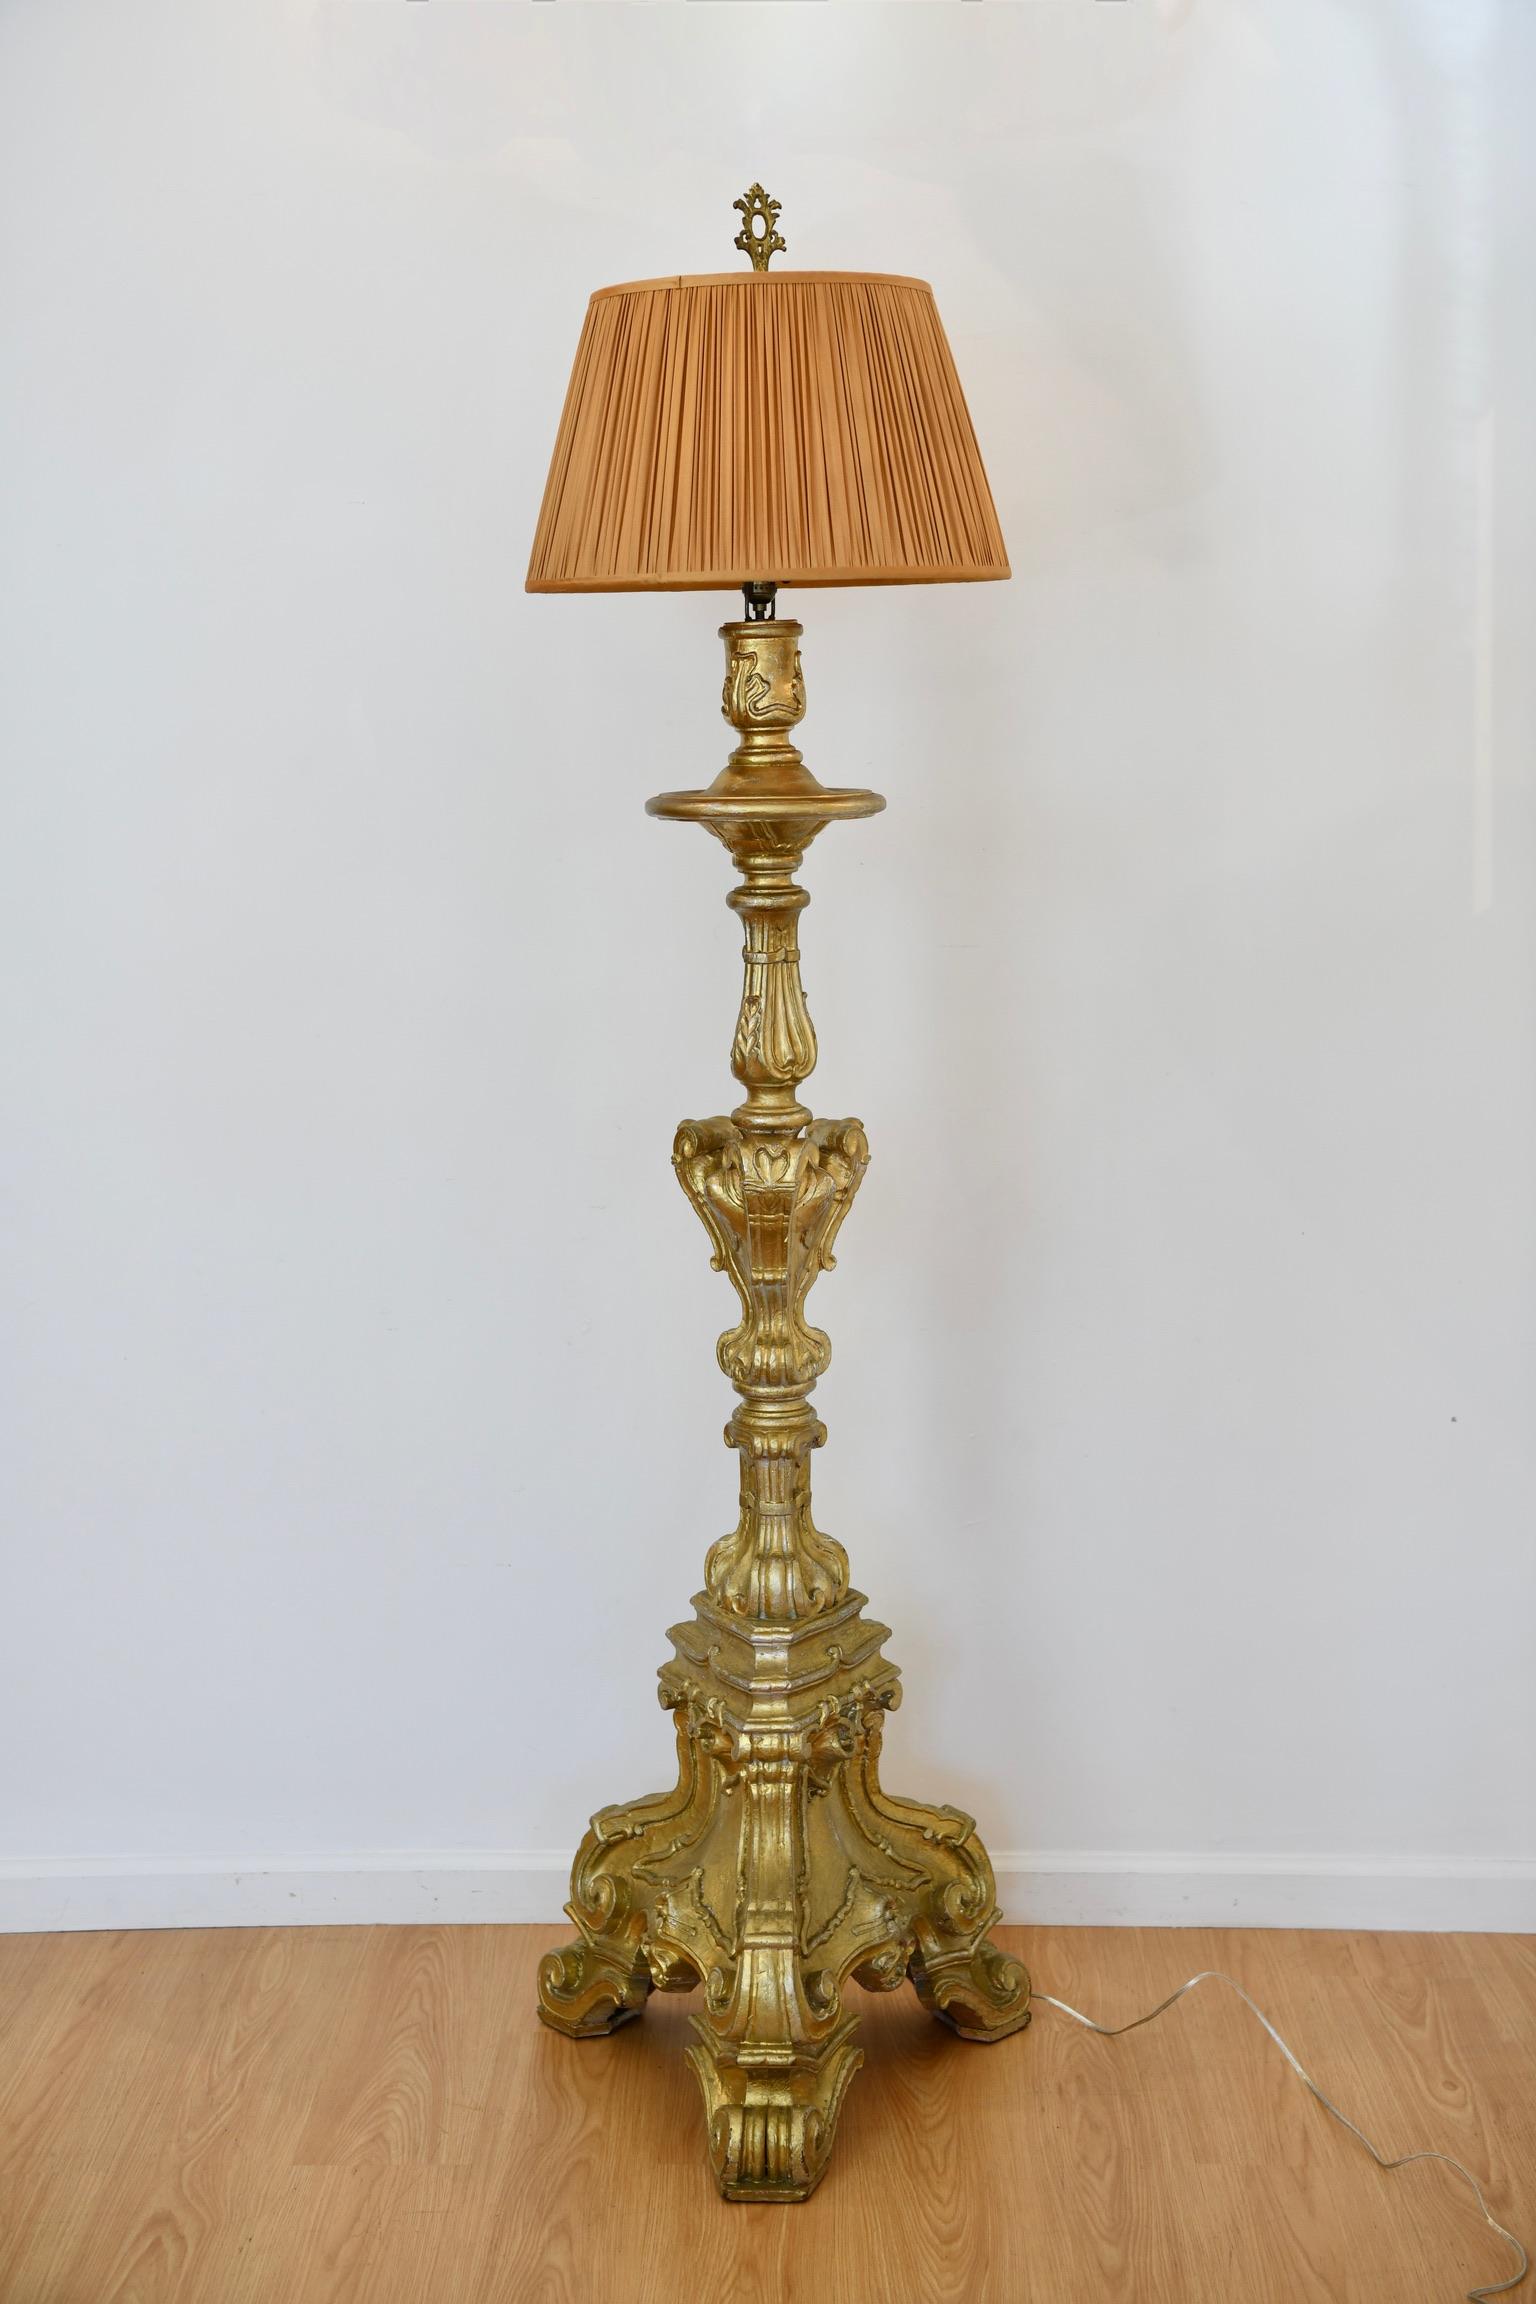 Lampadaire italien de style baroque en bois doré sculpté, transformé en chandelier à pique, avec des détails de volutes et de feuillages. Dimensions : 77,5 